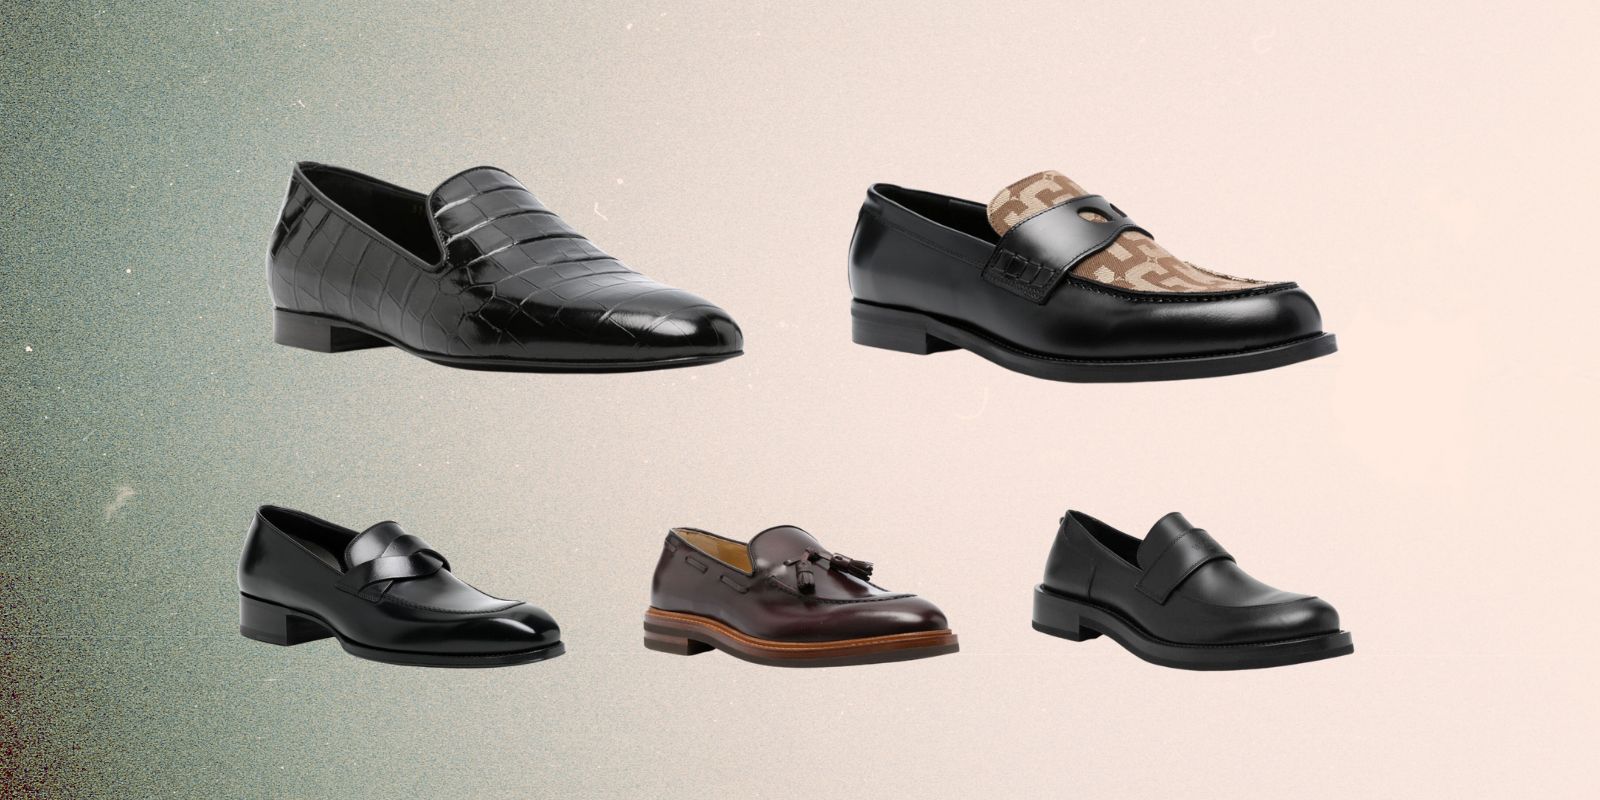 6 รองเท้าโลฟเฟอร์ (Loafers) ขึ้นชื่อเรื่องความดูดี สวมใส่ง่าย